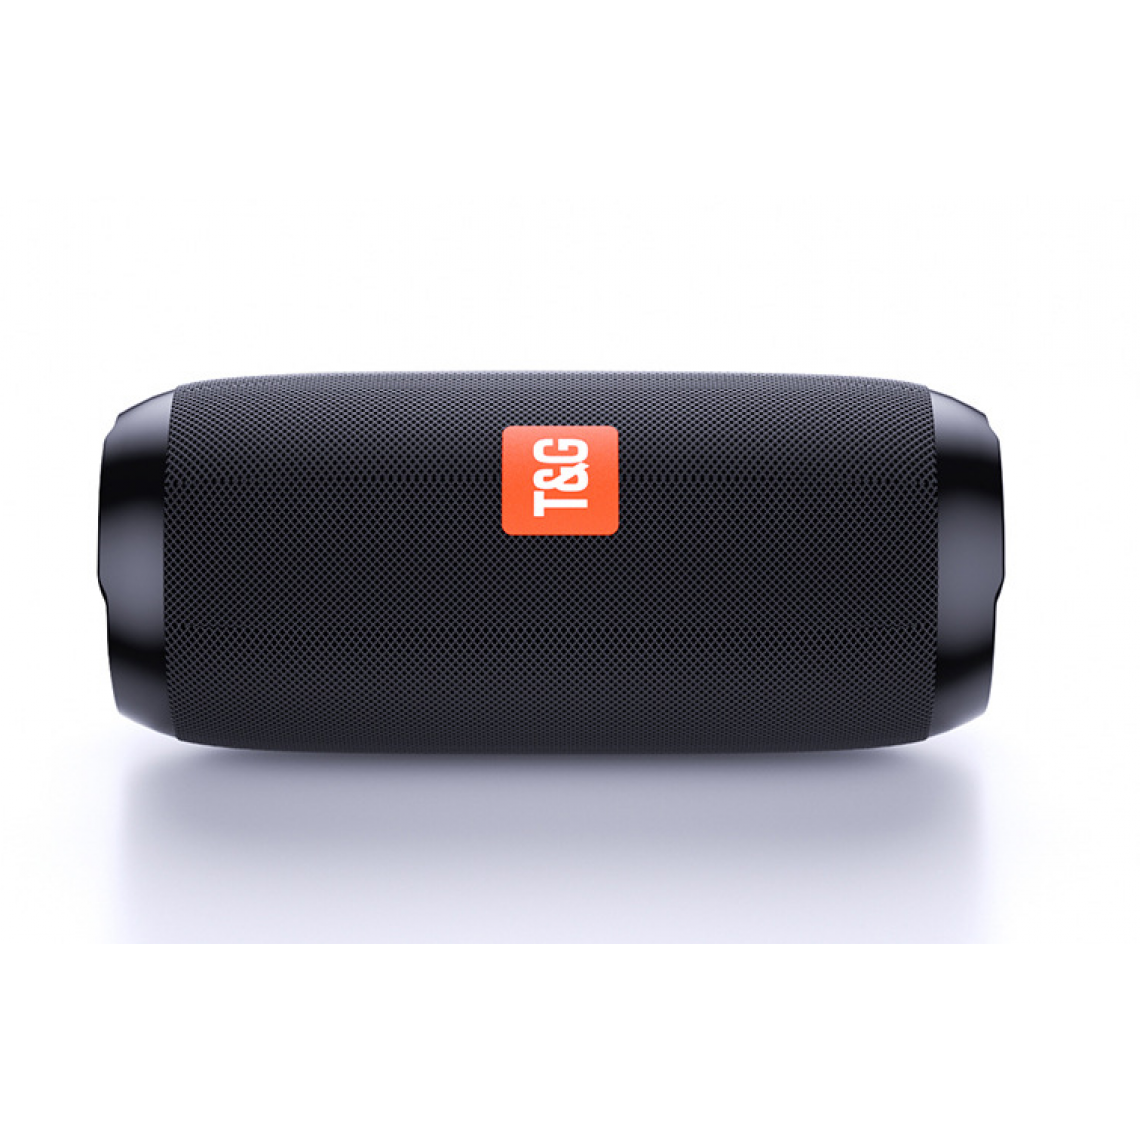 Universal - Haut-parleur Bluetooth portable noir 20W Wireless Subwoofer Imperméable Outdoor Speaker Support Auxiliary TF Subwoofer Speaker |(Le noir) - Enceinte PC